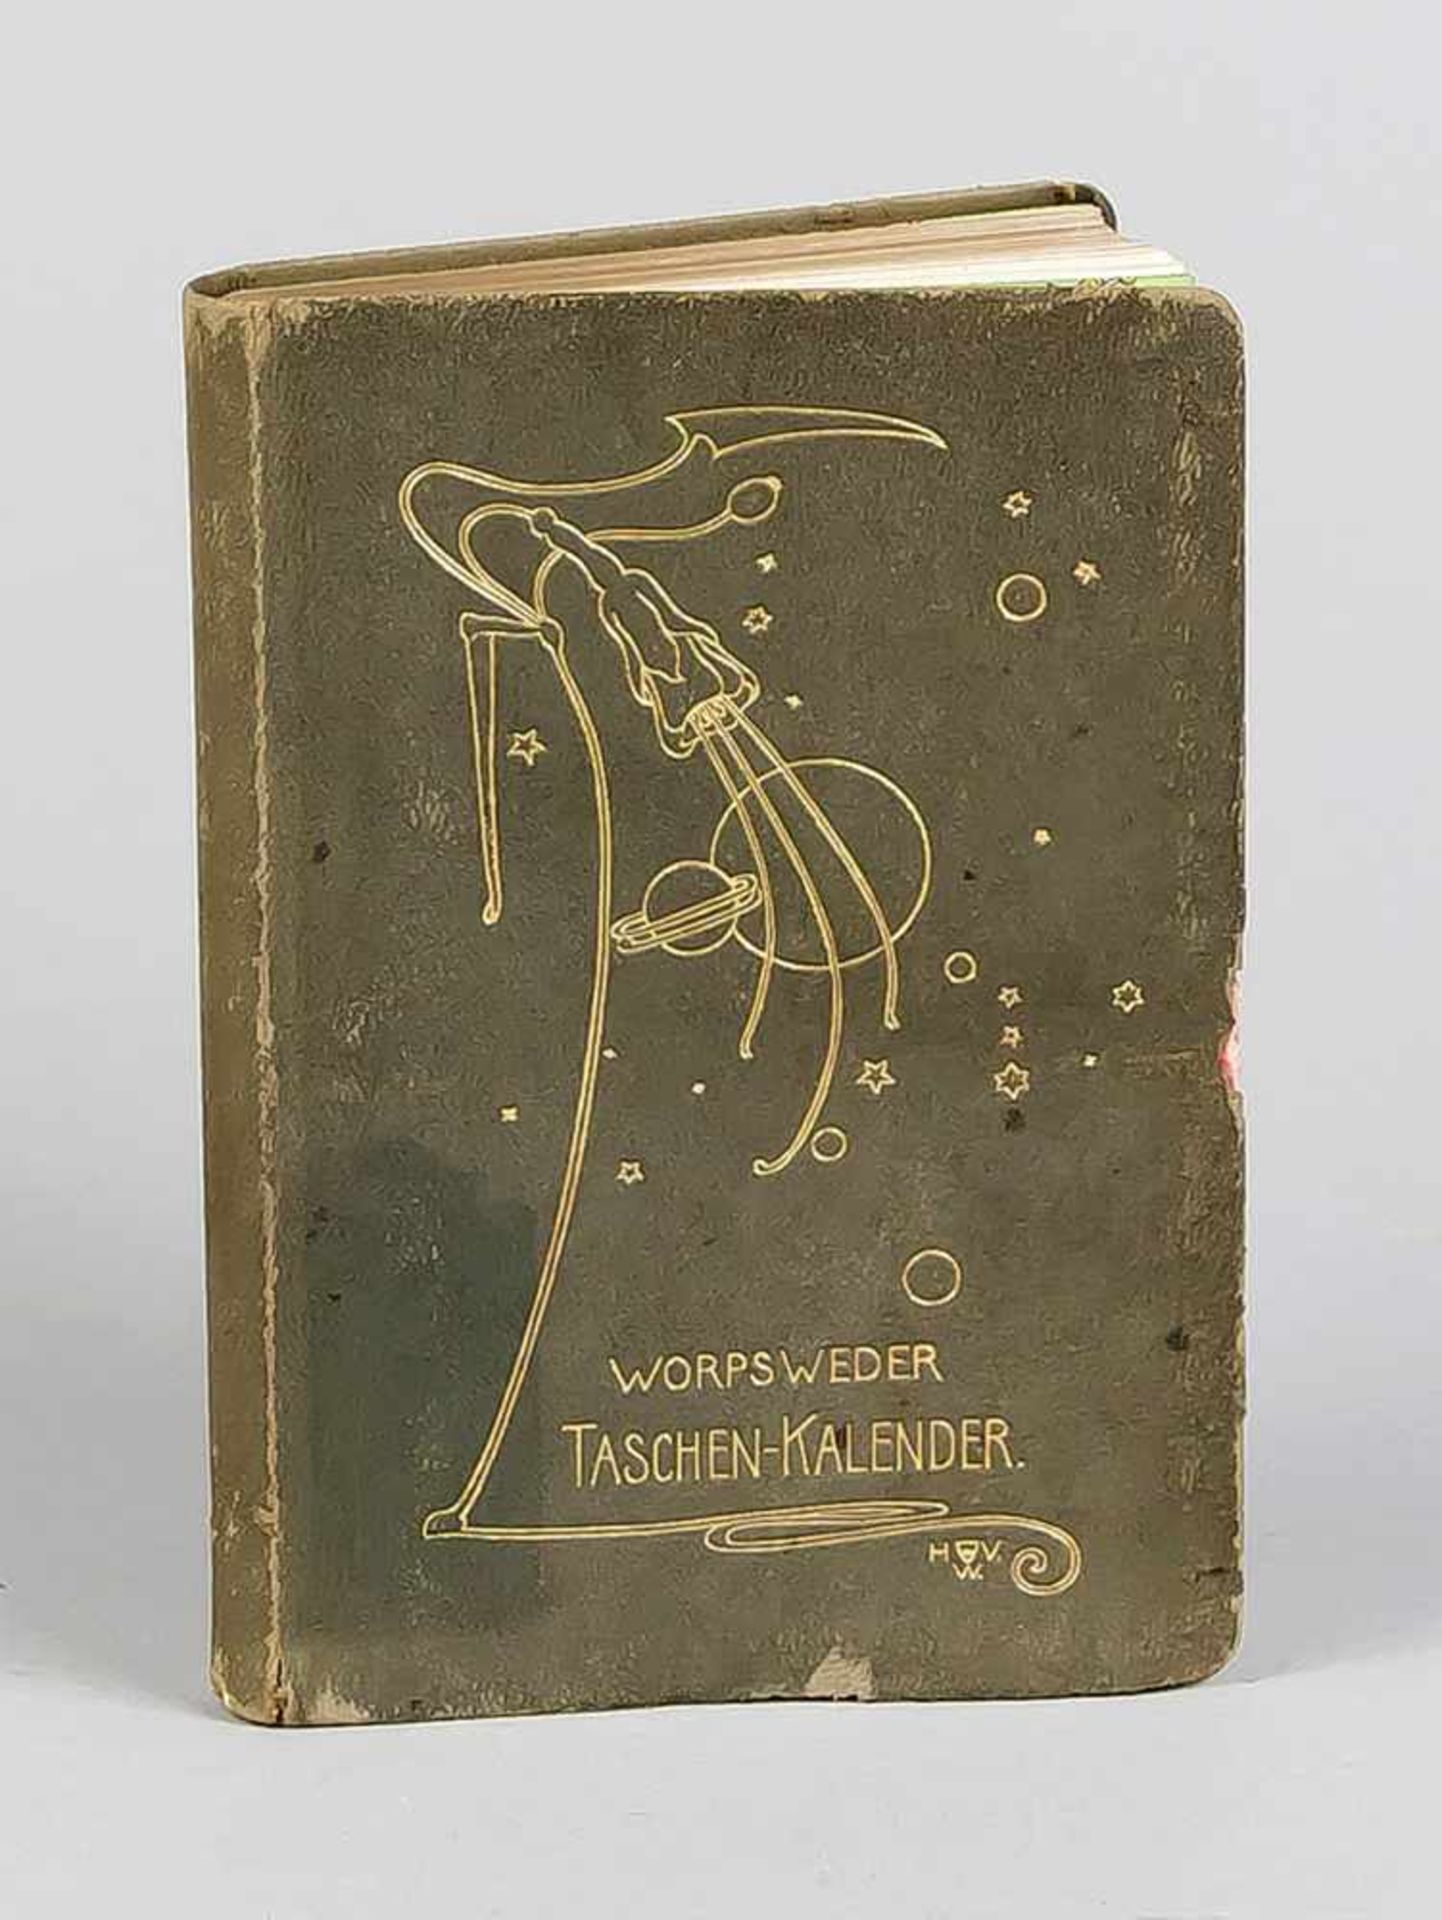 Vogeler, Heinrich. 1872 Bremen - 1942 Kasachstan. "Worpsweder Taschenkalender. EinMerkbuch mit 12